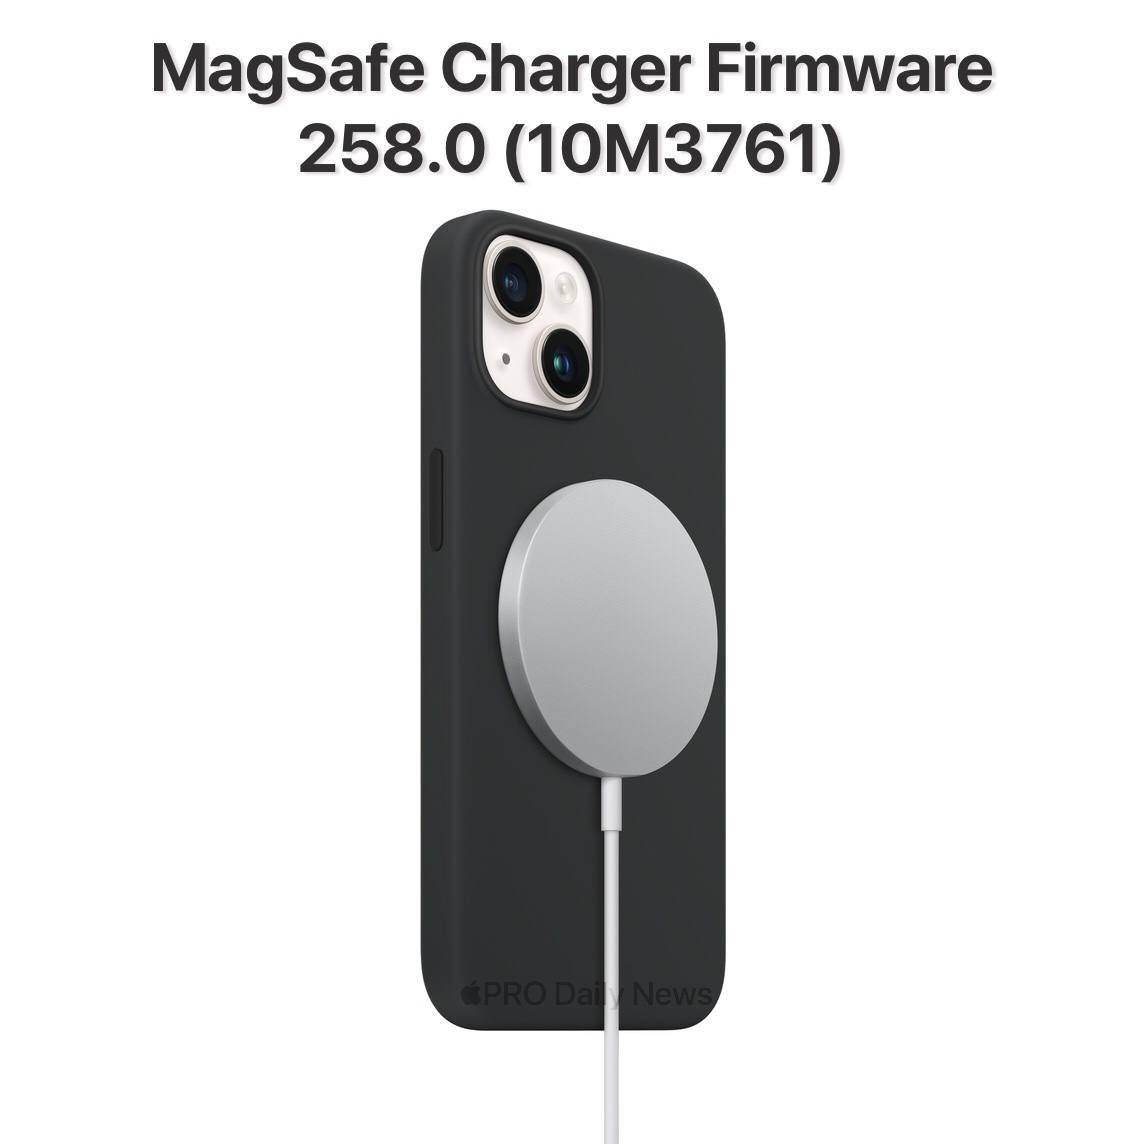 苹果为MagSafe充电器发布固件更新 高于10M1821固件